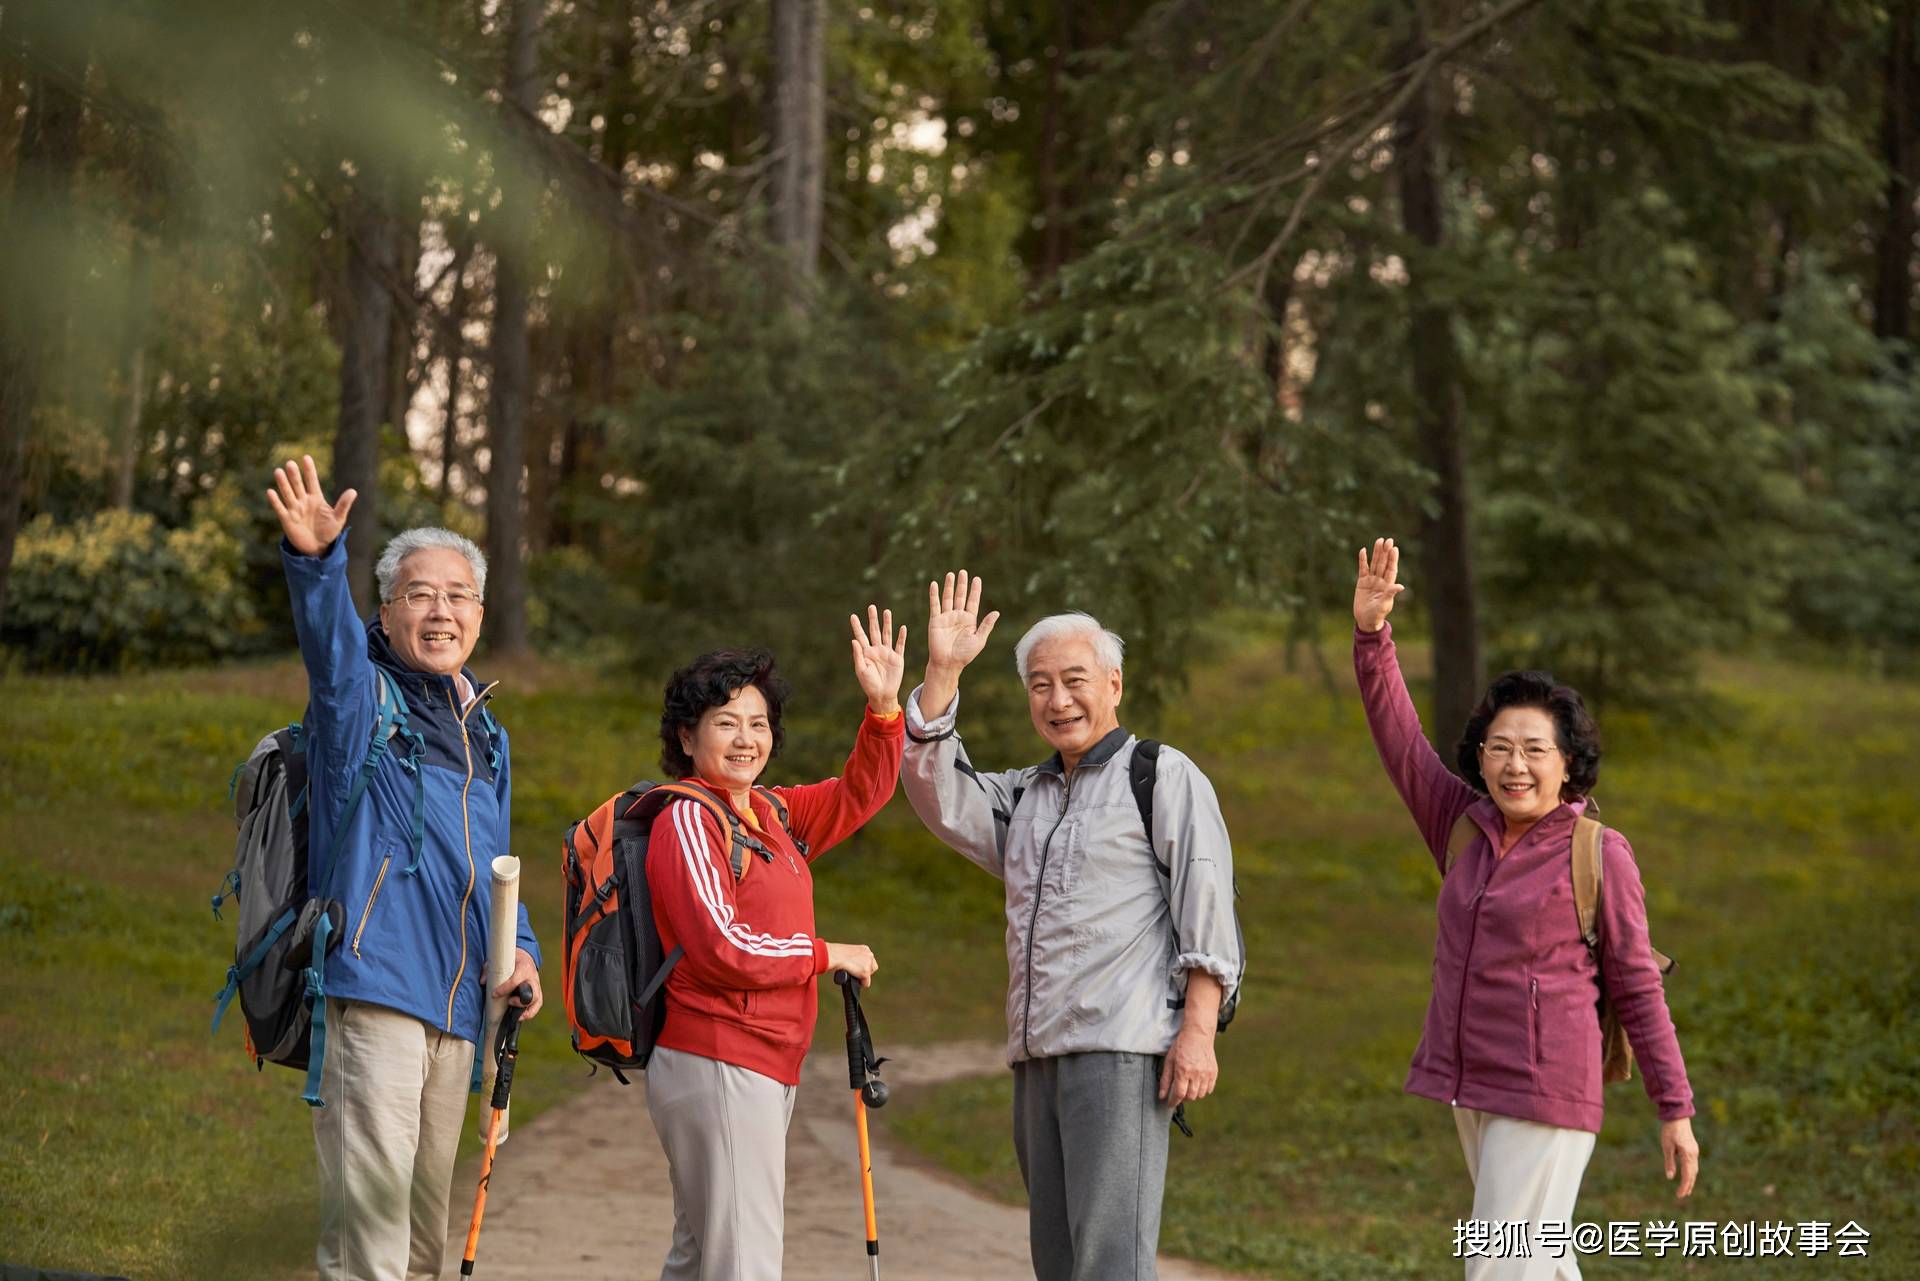 50一60中老年结伴旅游群 异性结伴旅游群